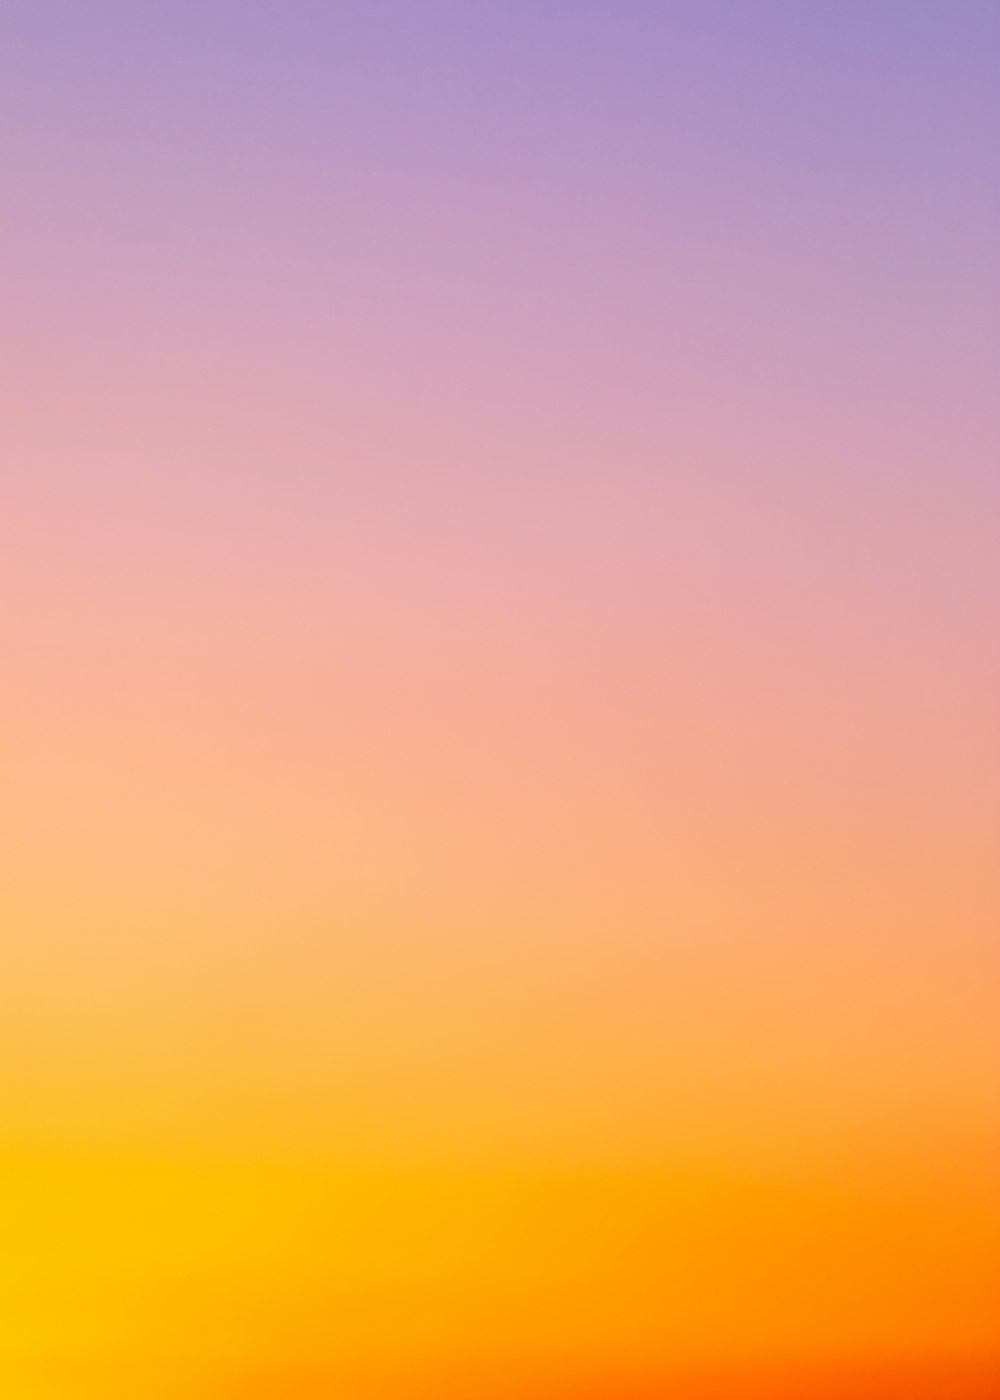 Hình nền gradient màu cam miễn phí trên Unsplash: Khám phá ngay bộ sưu tập hình nền Gradient màu cam miễn phí trên Unsplash. Được tạo nên bởi những nhiếp ảnh gia và người thiết kế tài năng nhất, các hình nền cam Gradient sẽ mang lại cho thiết kế của bạn một tình cảm đầy sức sống và năng lượng.